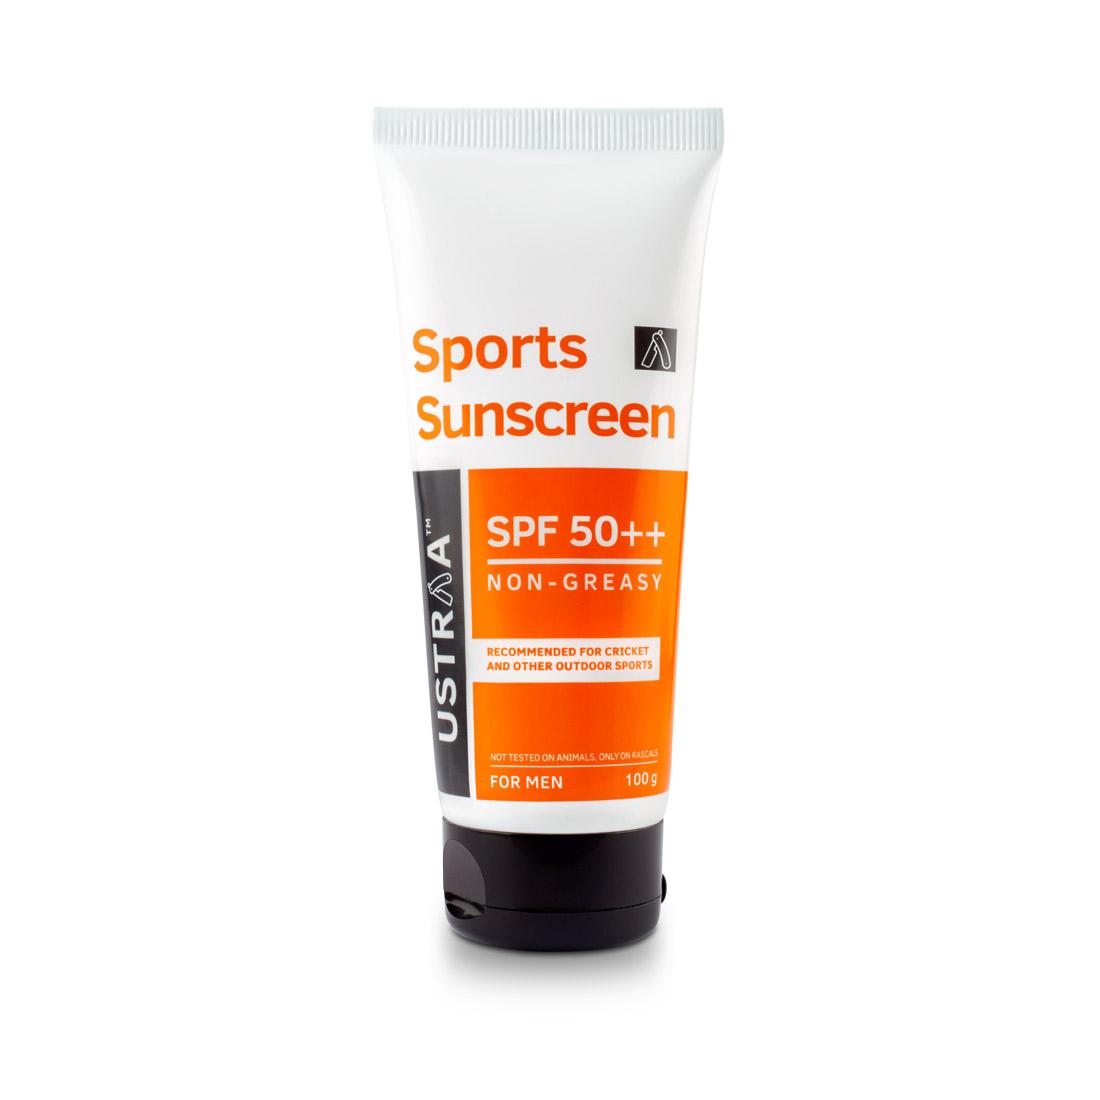 Sports Sunscreen (Zinc) SPF 50++